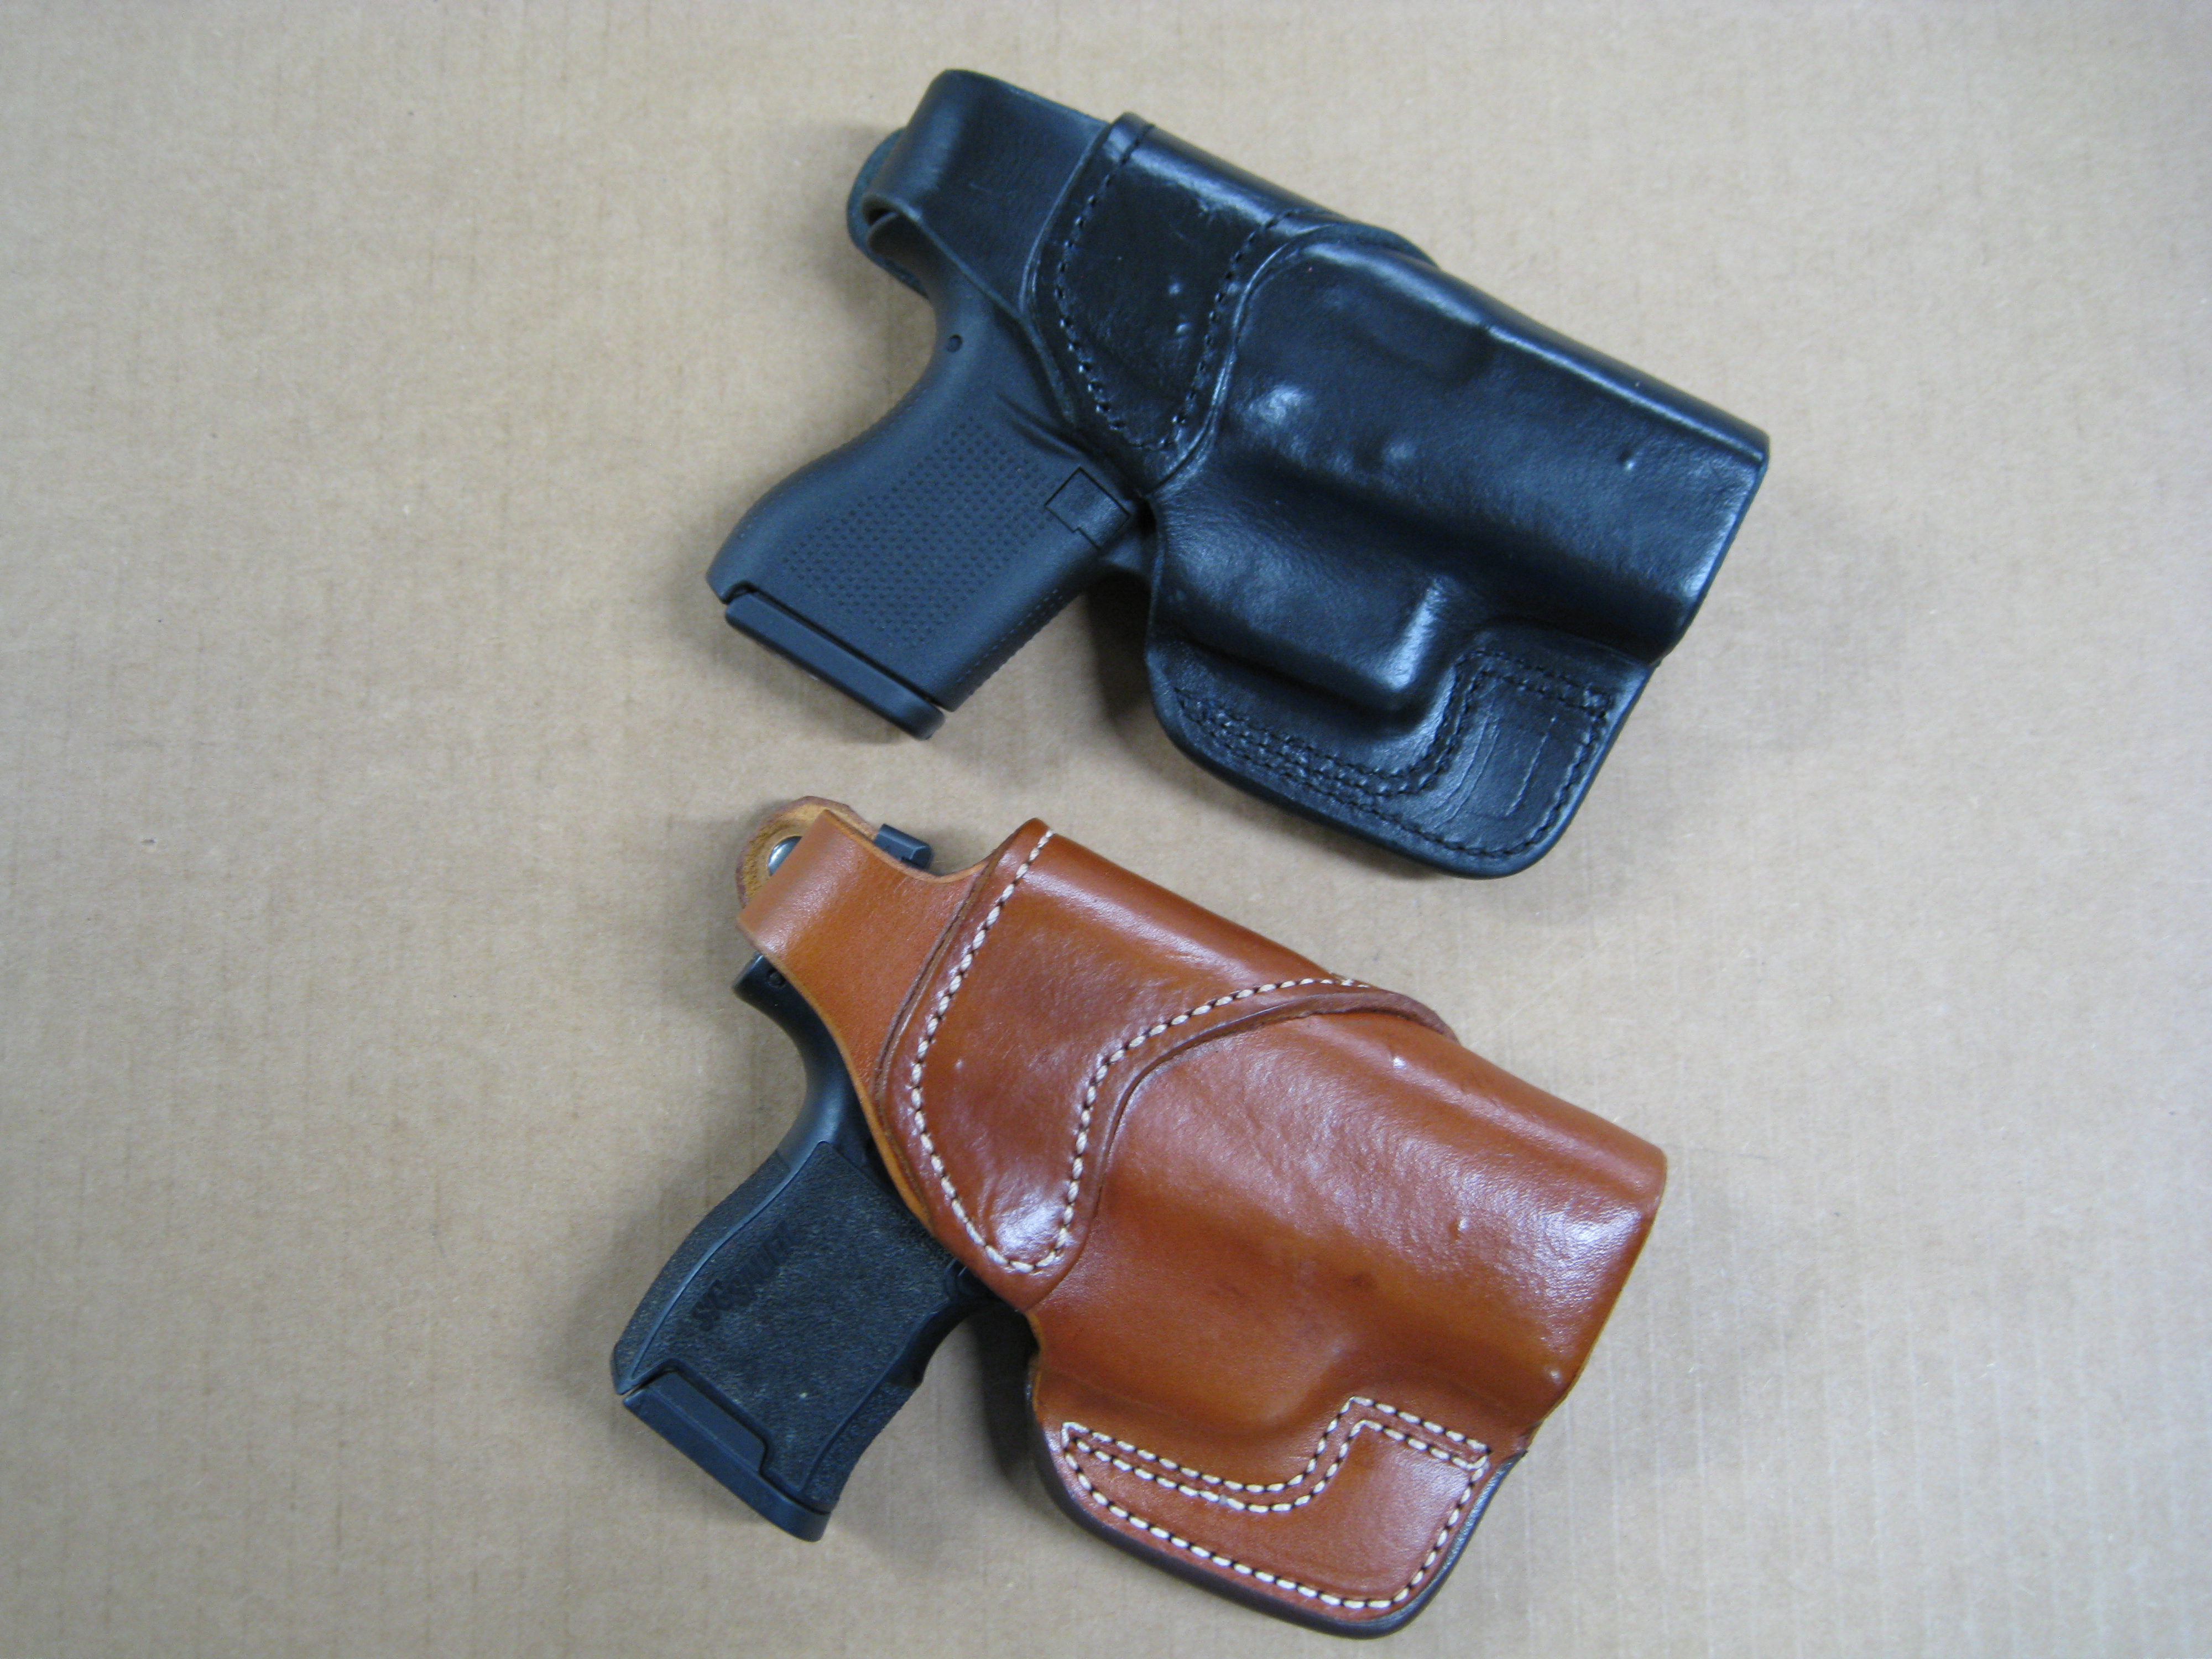 Handmade Belt Slide Outside The Waist Band OWB Carry Leather Gun Holster 